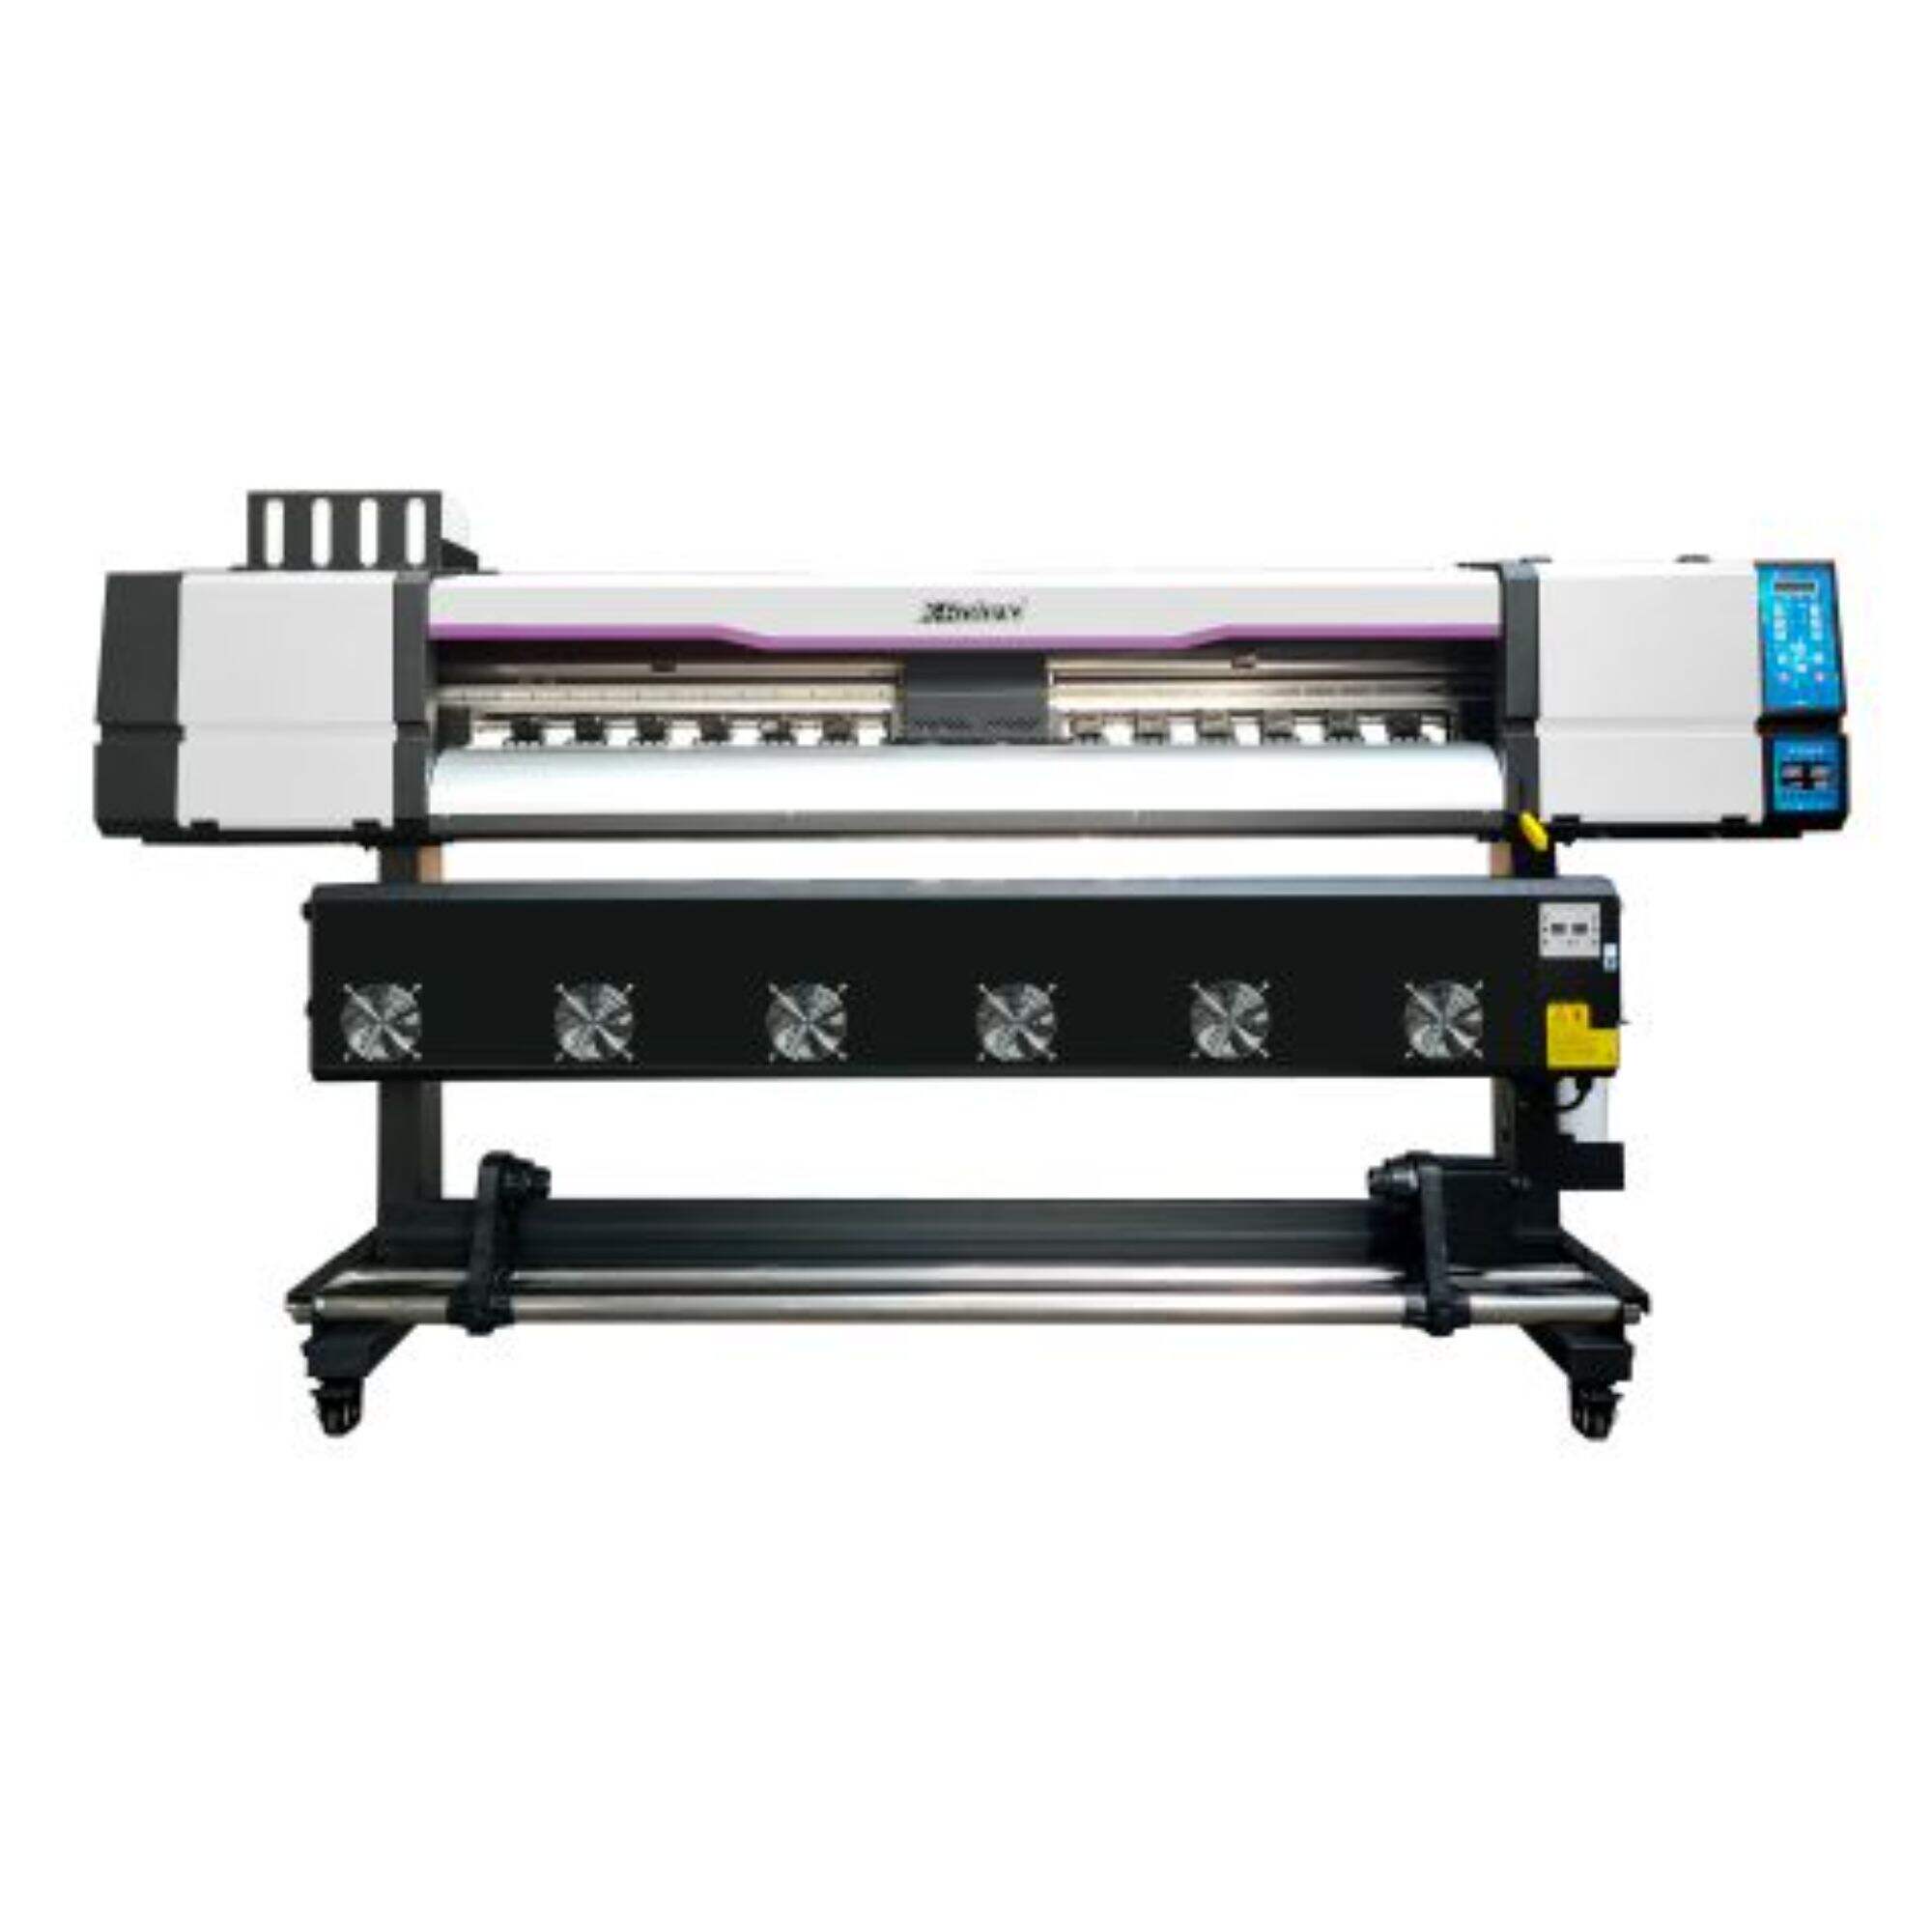 XL-1602H I3200 Daxili/açıq printer